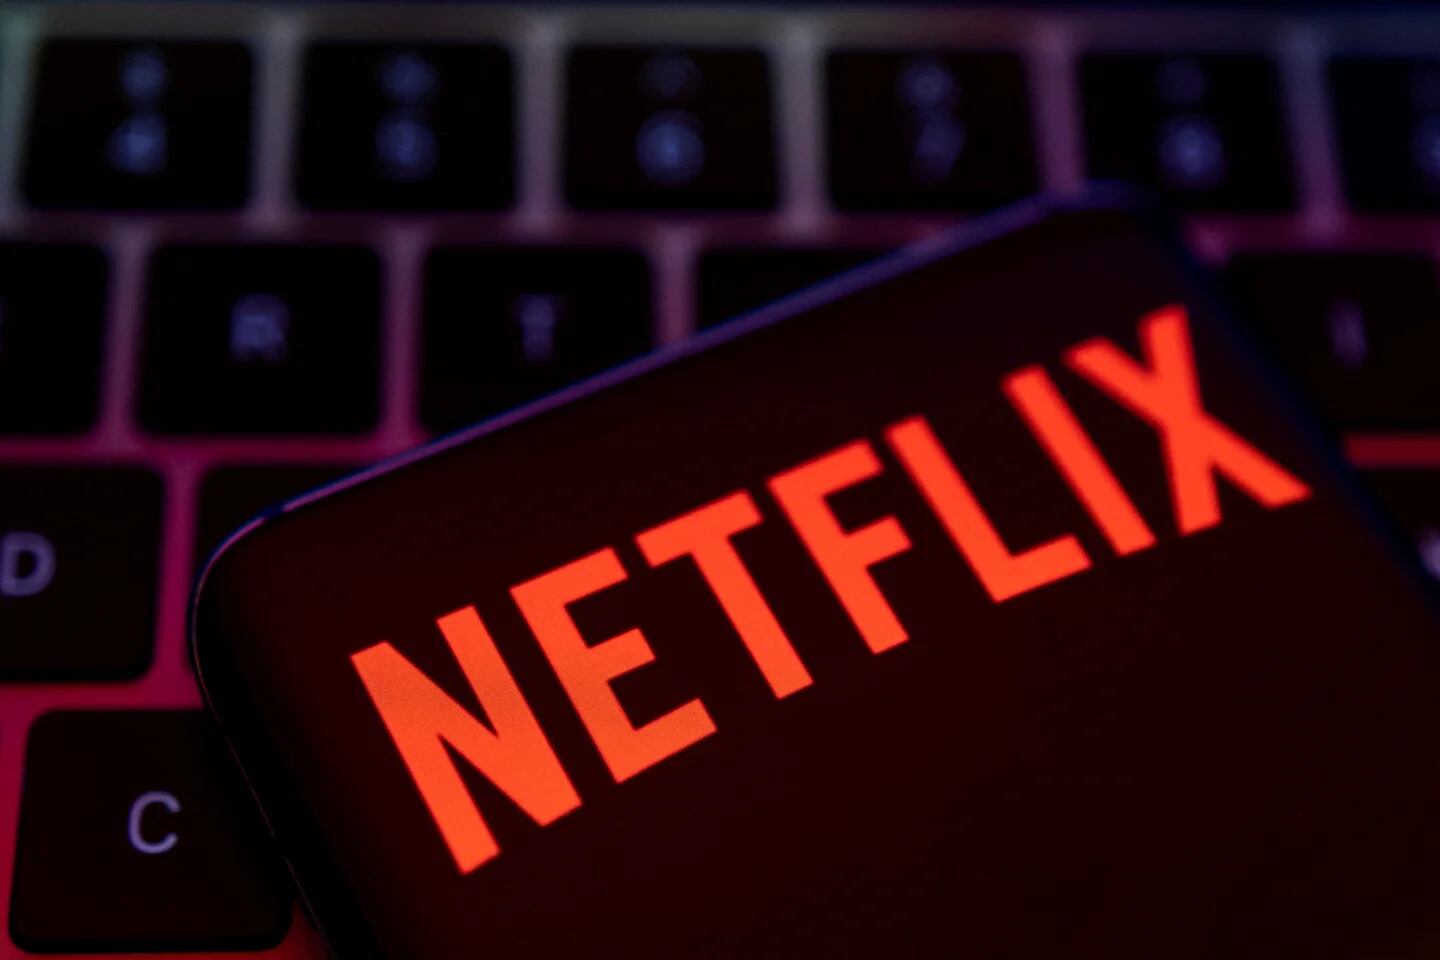 Cuánto cuesta la suscripción de Netflix en Estados Unidos?